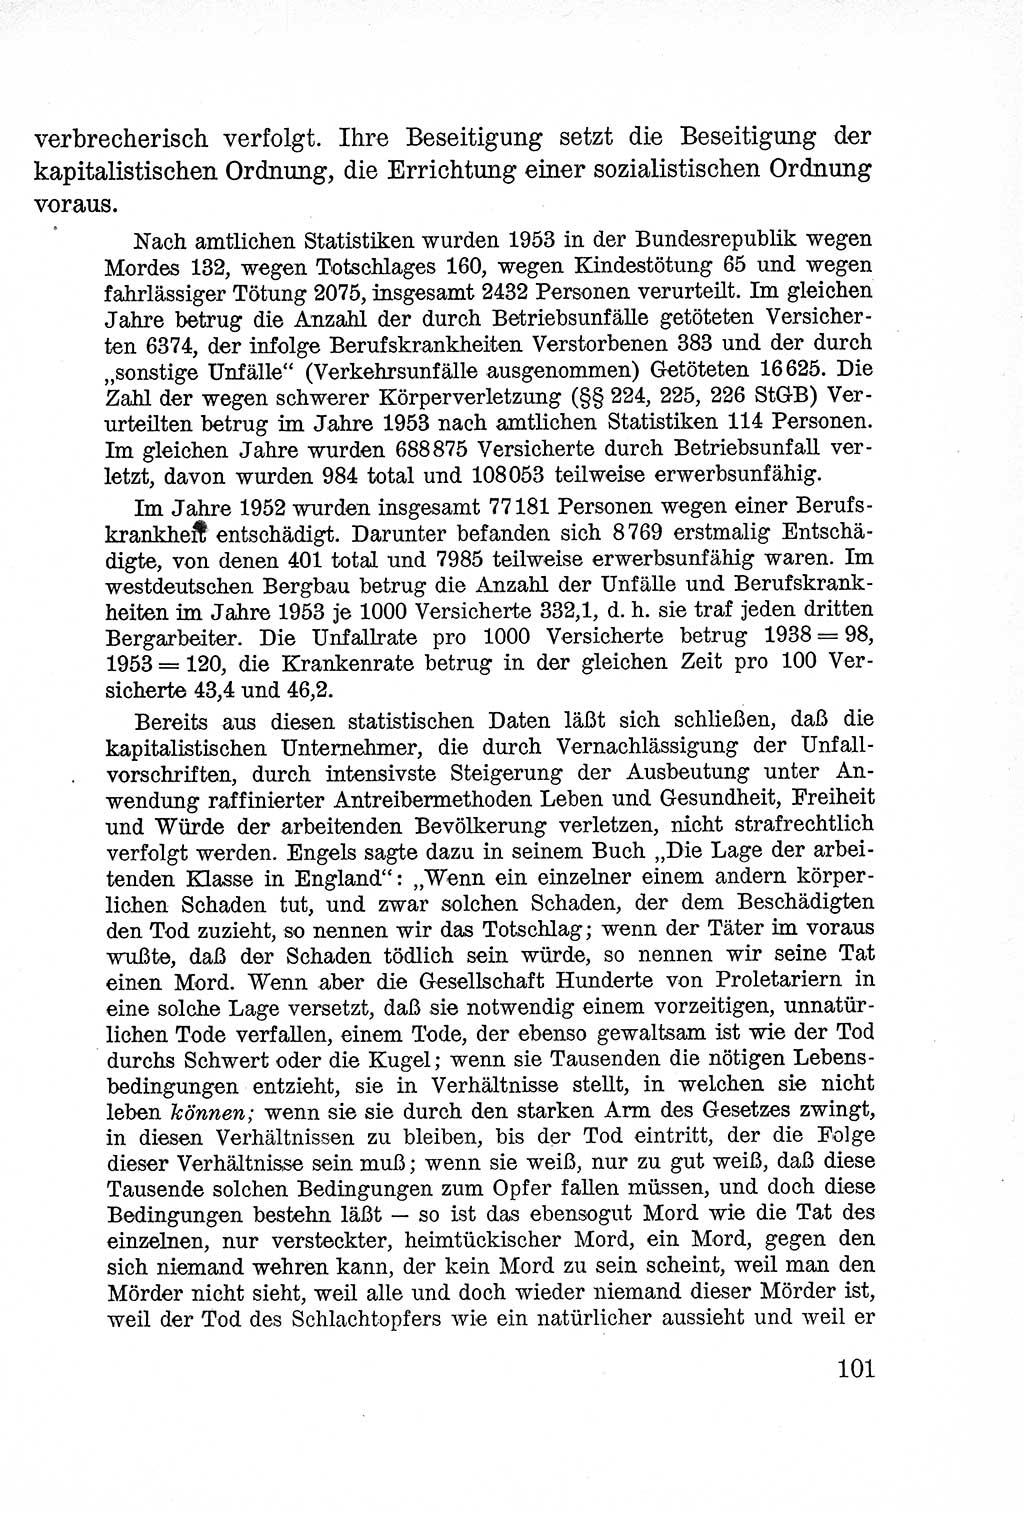 Lehrbuch des Strafrechts der Deutschen Demokratischen Republik (DDR), Allgemeiner Teil 1957, Seite 101 (Lb. Strafr. DDR AT 1957, S. 101)